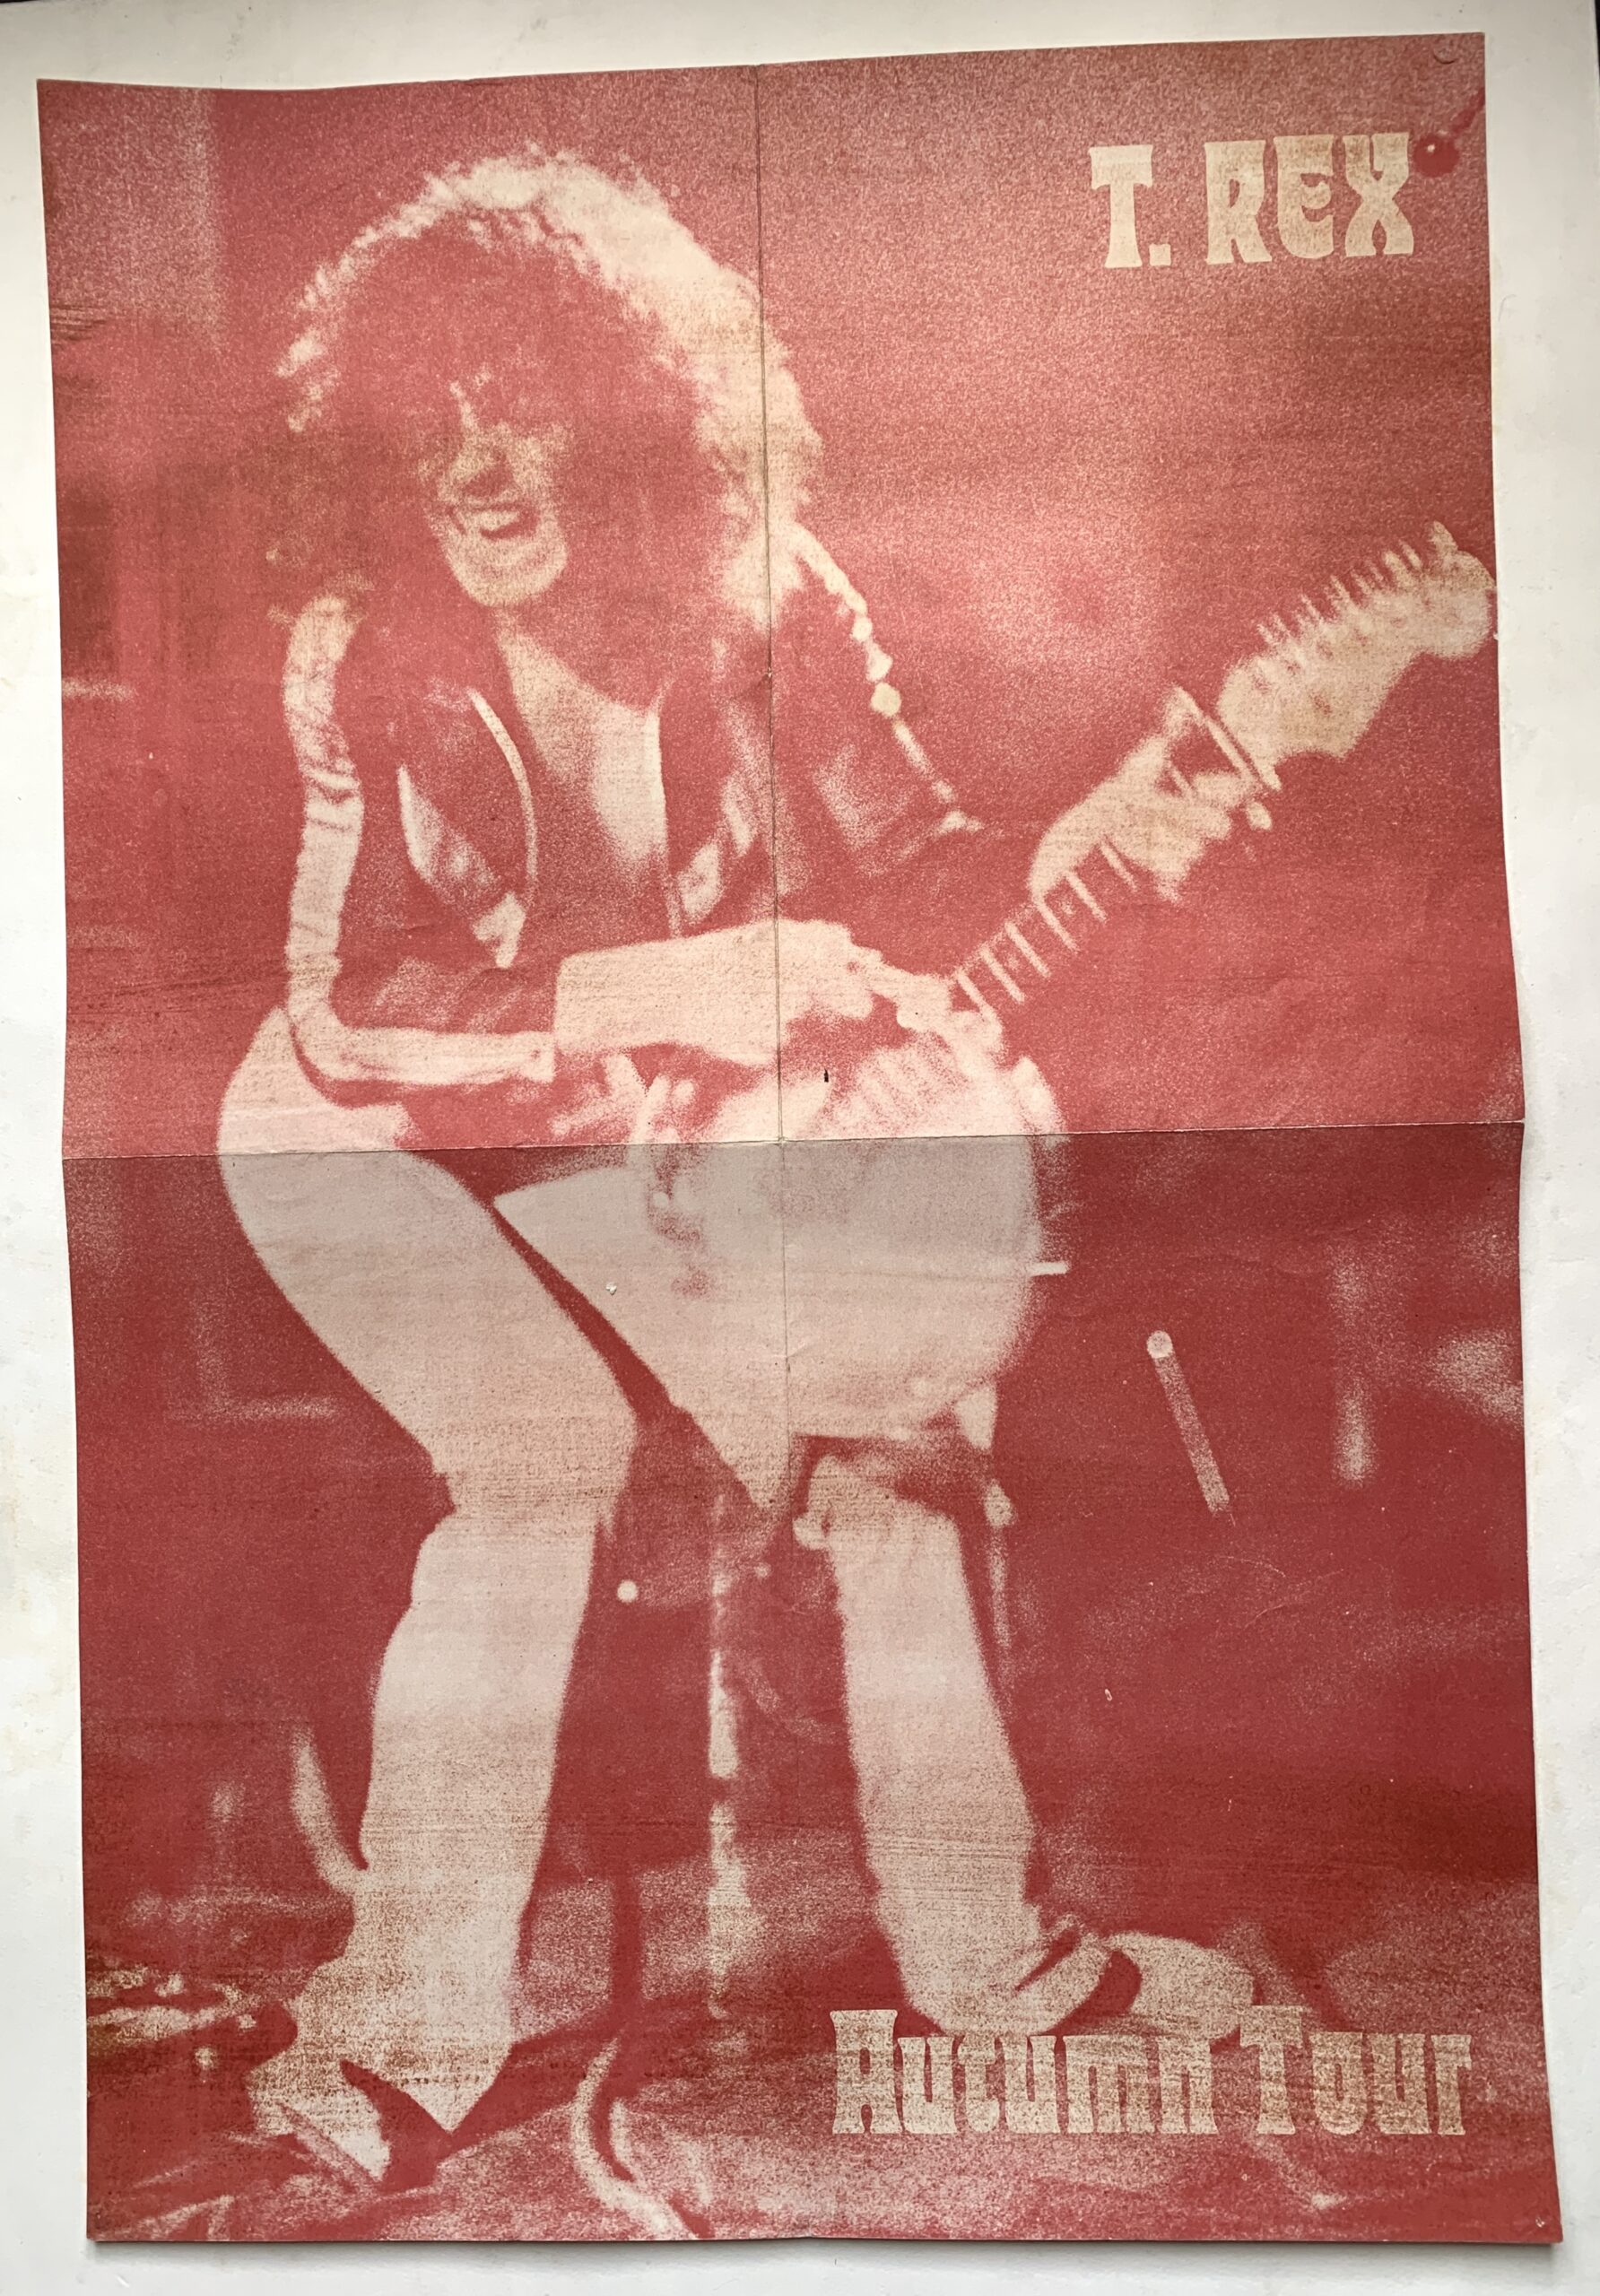 t rex tour 1972